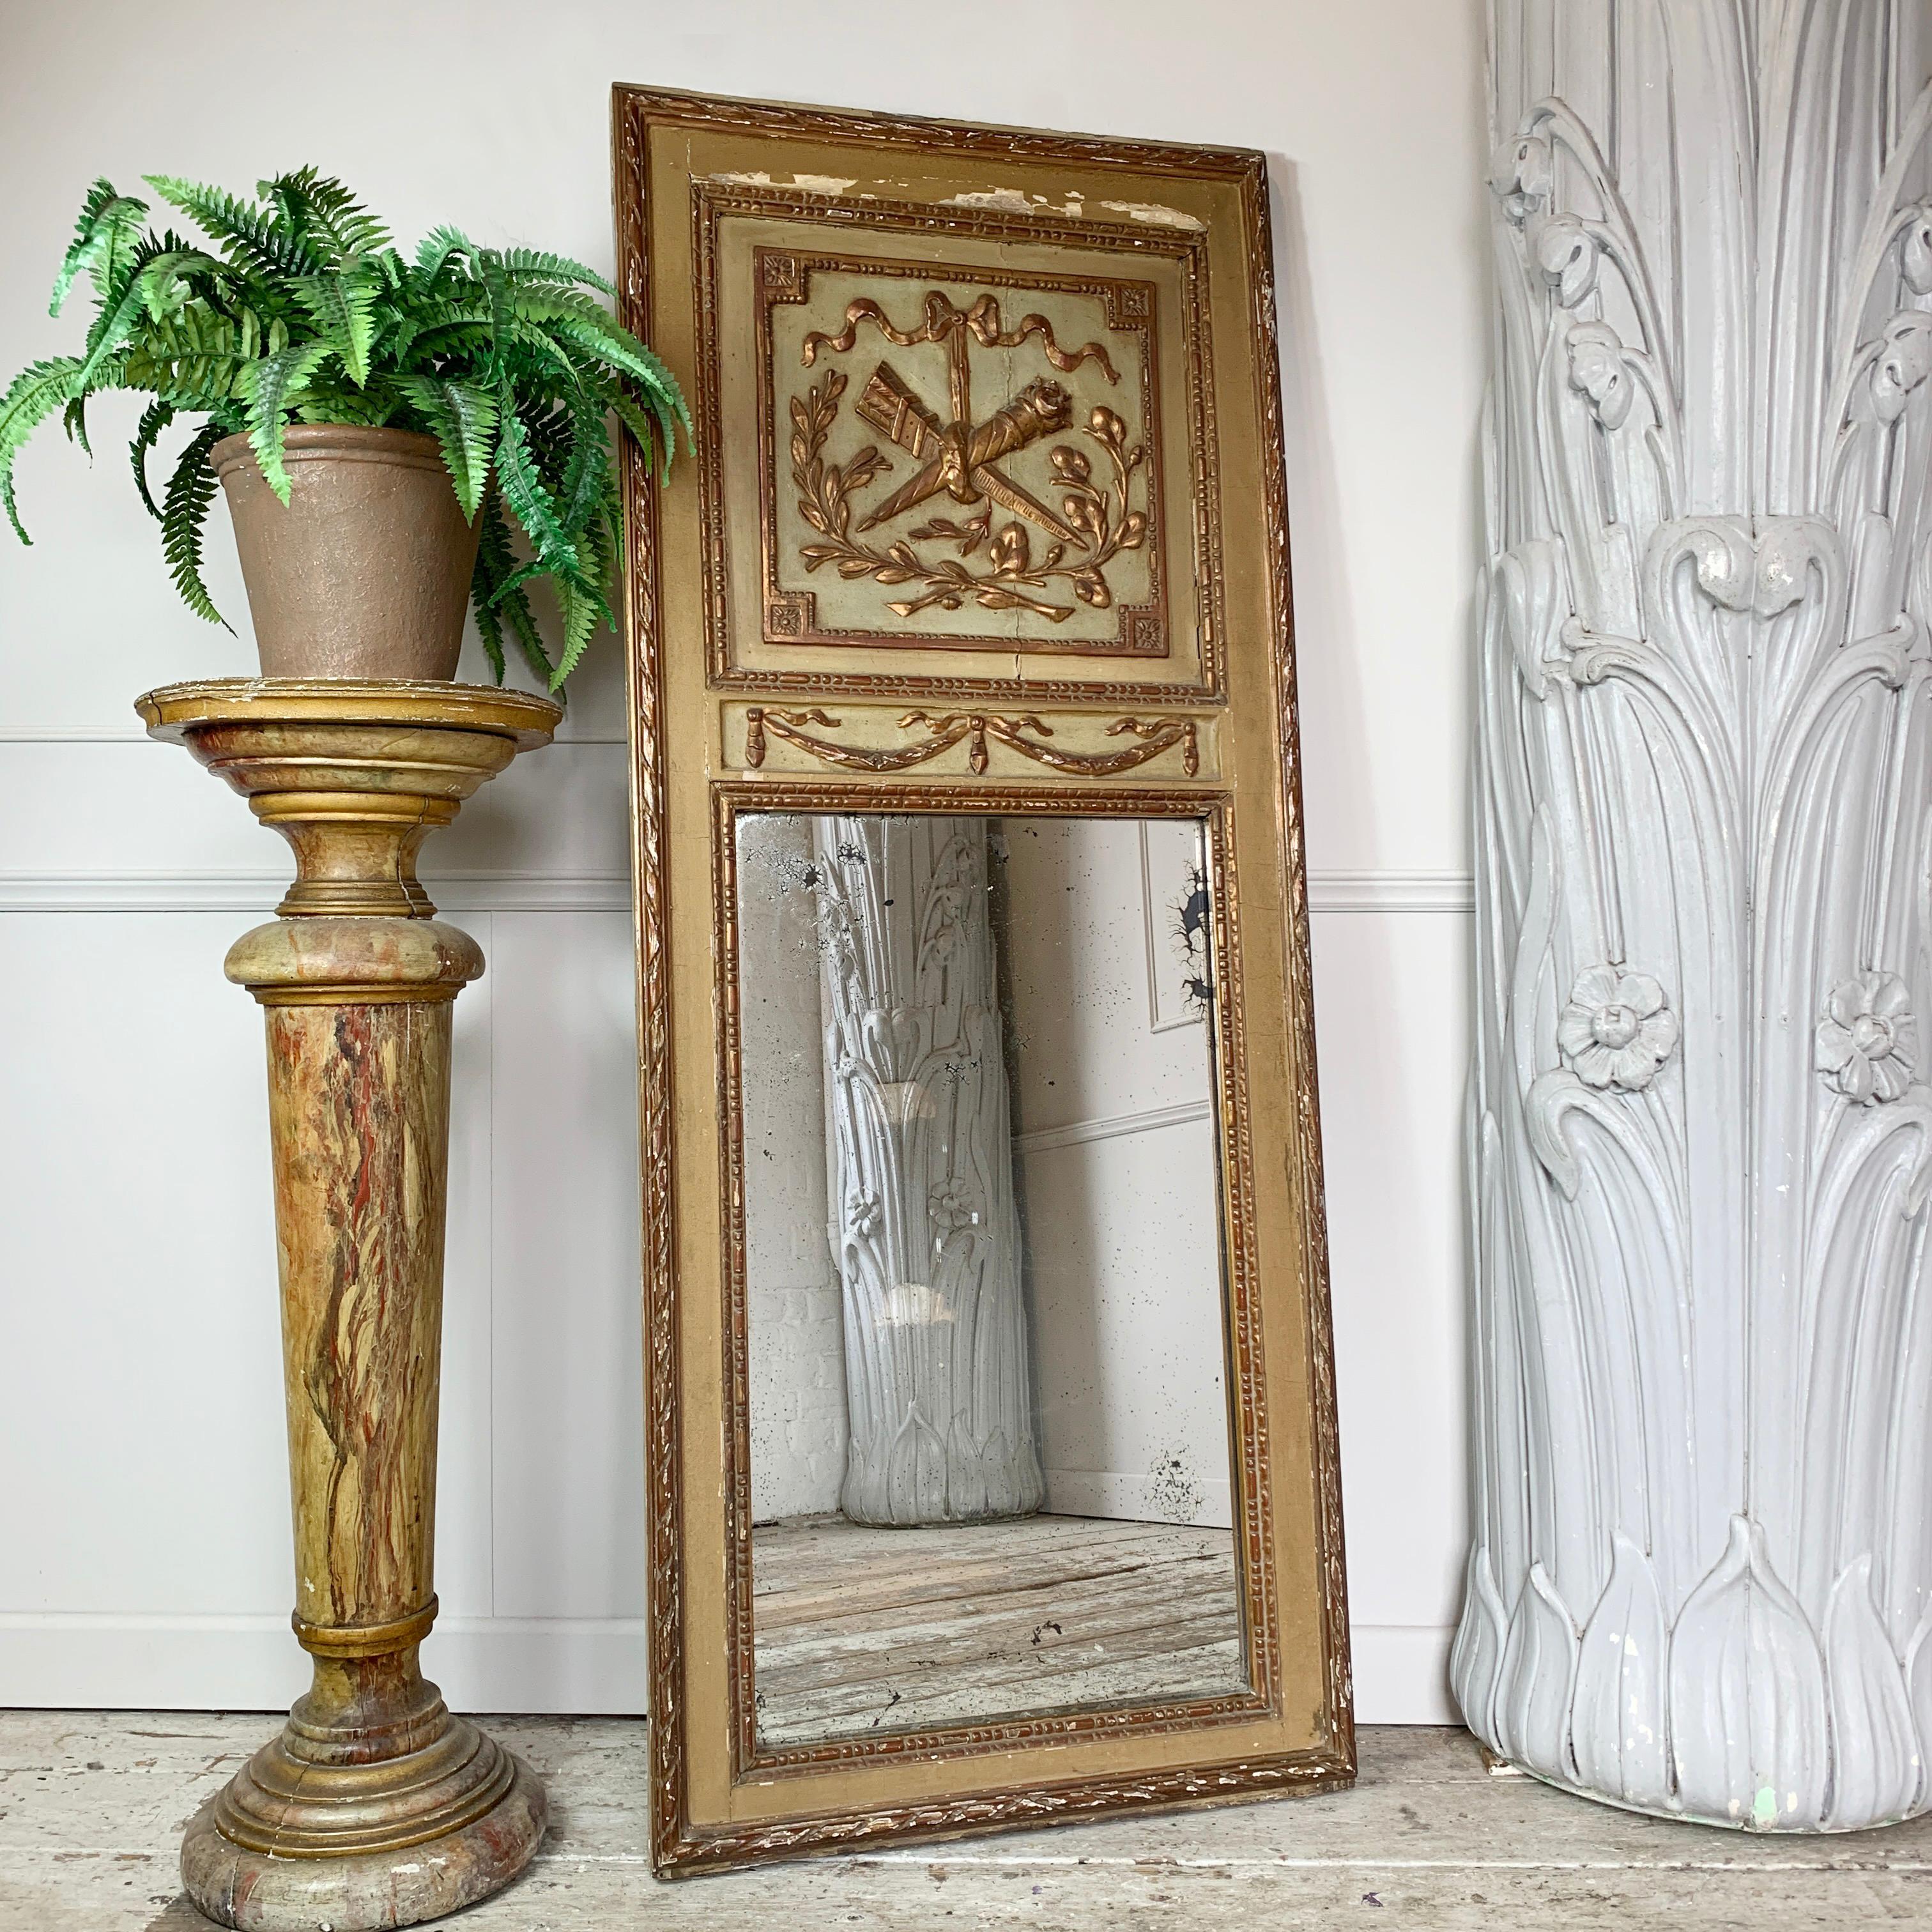 A.I.C.C., miroir doré du début du 19e siècle.
Fantastique exemple de miroir Trumeau français aux proportions élégantes. Le cadre en bois sculpté est recouvert de gesso et de dorure, dans des tons or et crème. 
Le cartouche est détaillé avec les